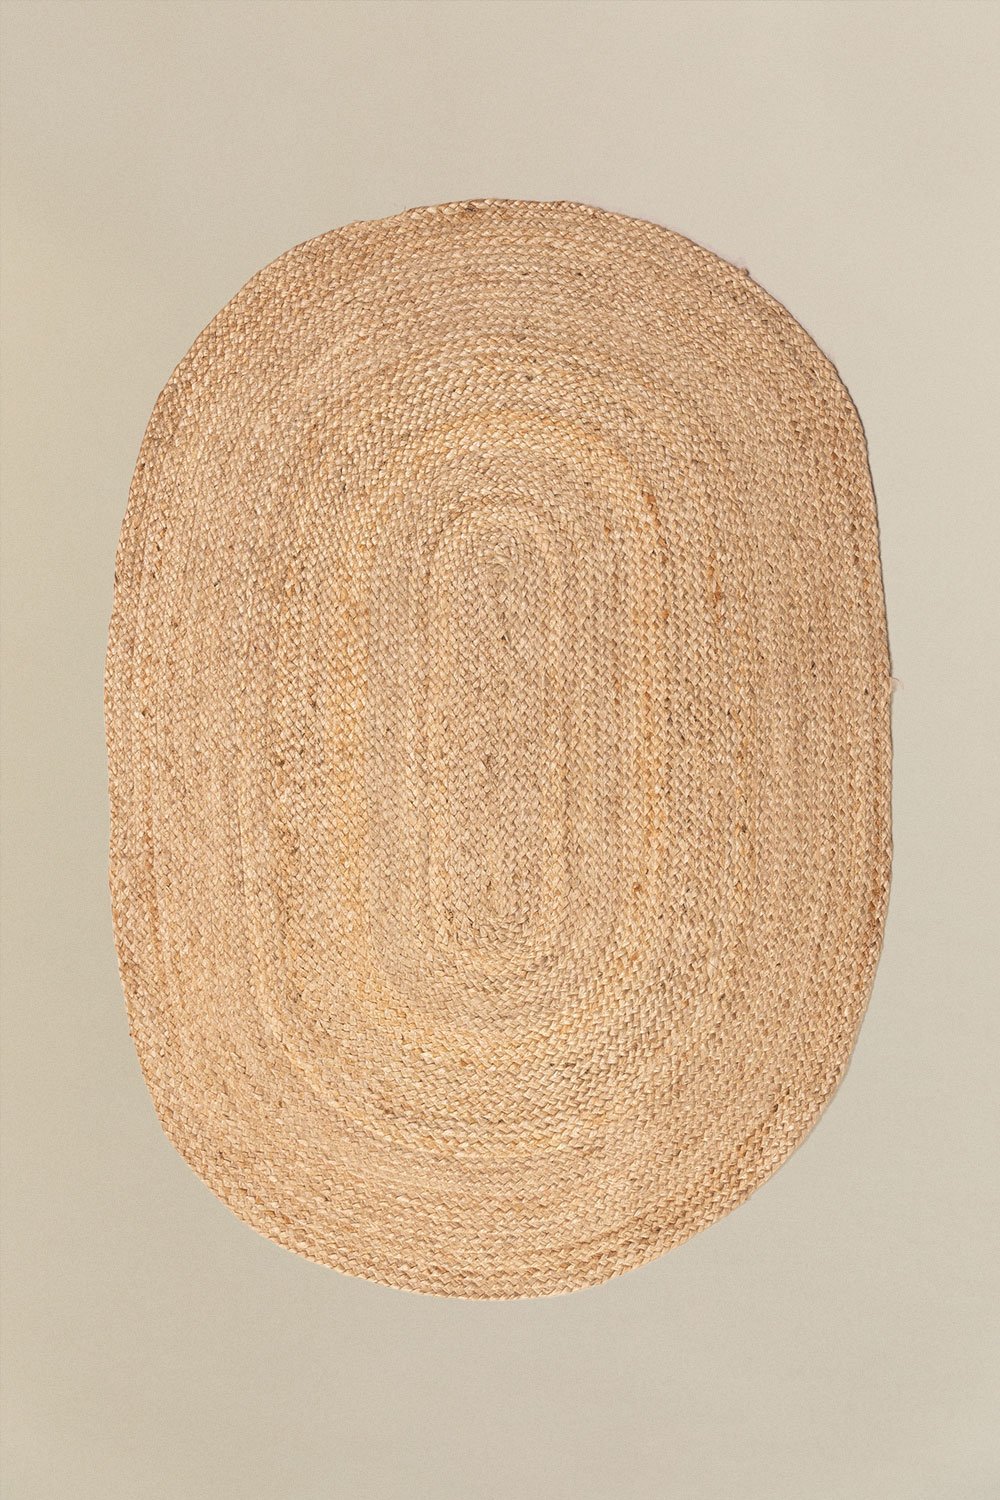 Tapete Oval em Juta Natural (141x99,5 cm) Tempo, imagem de galeria 1